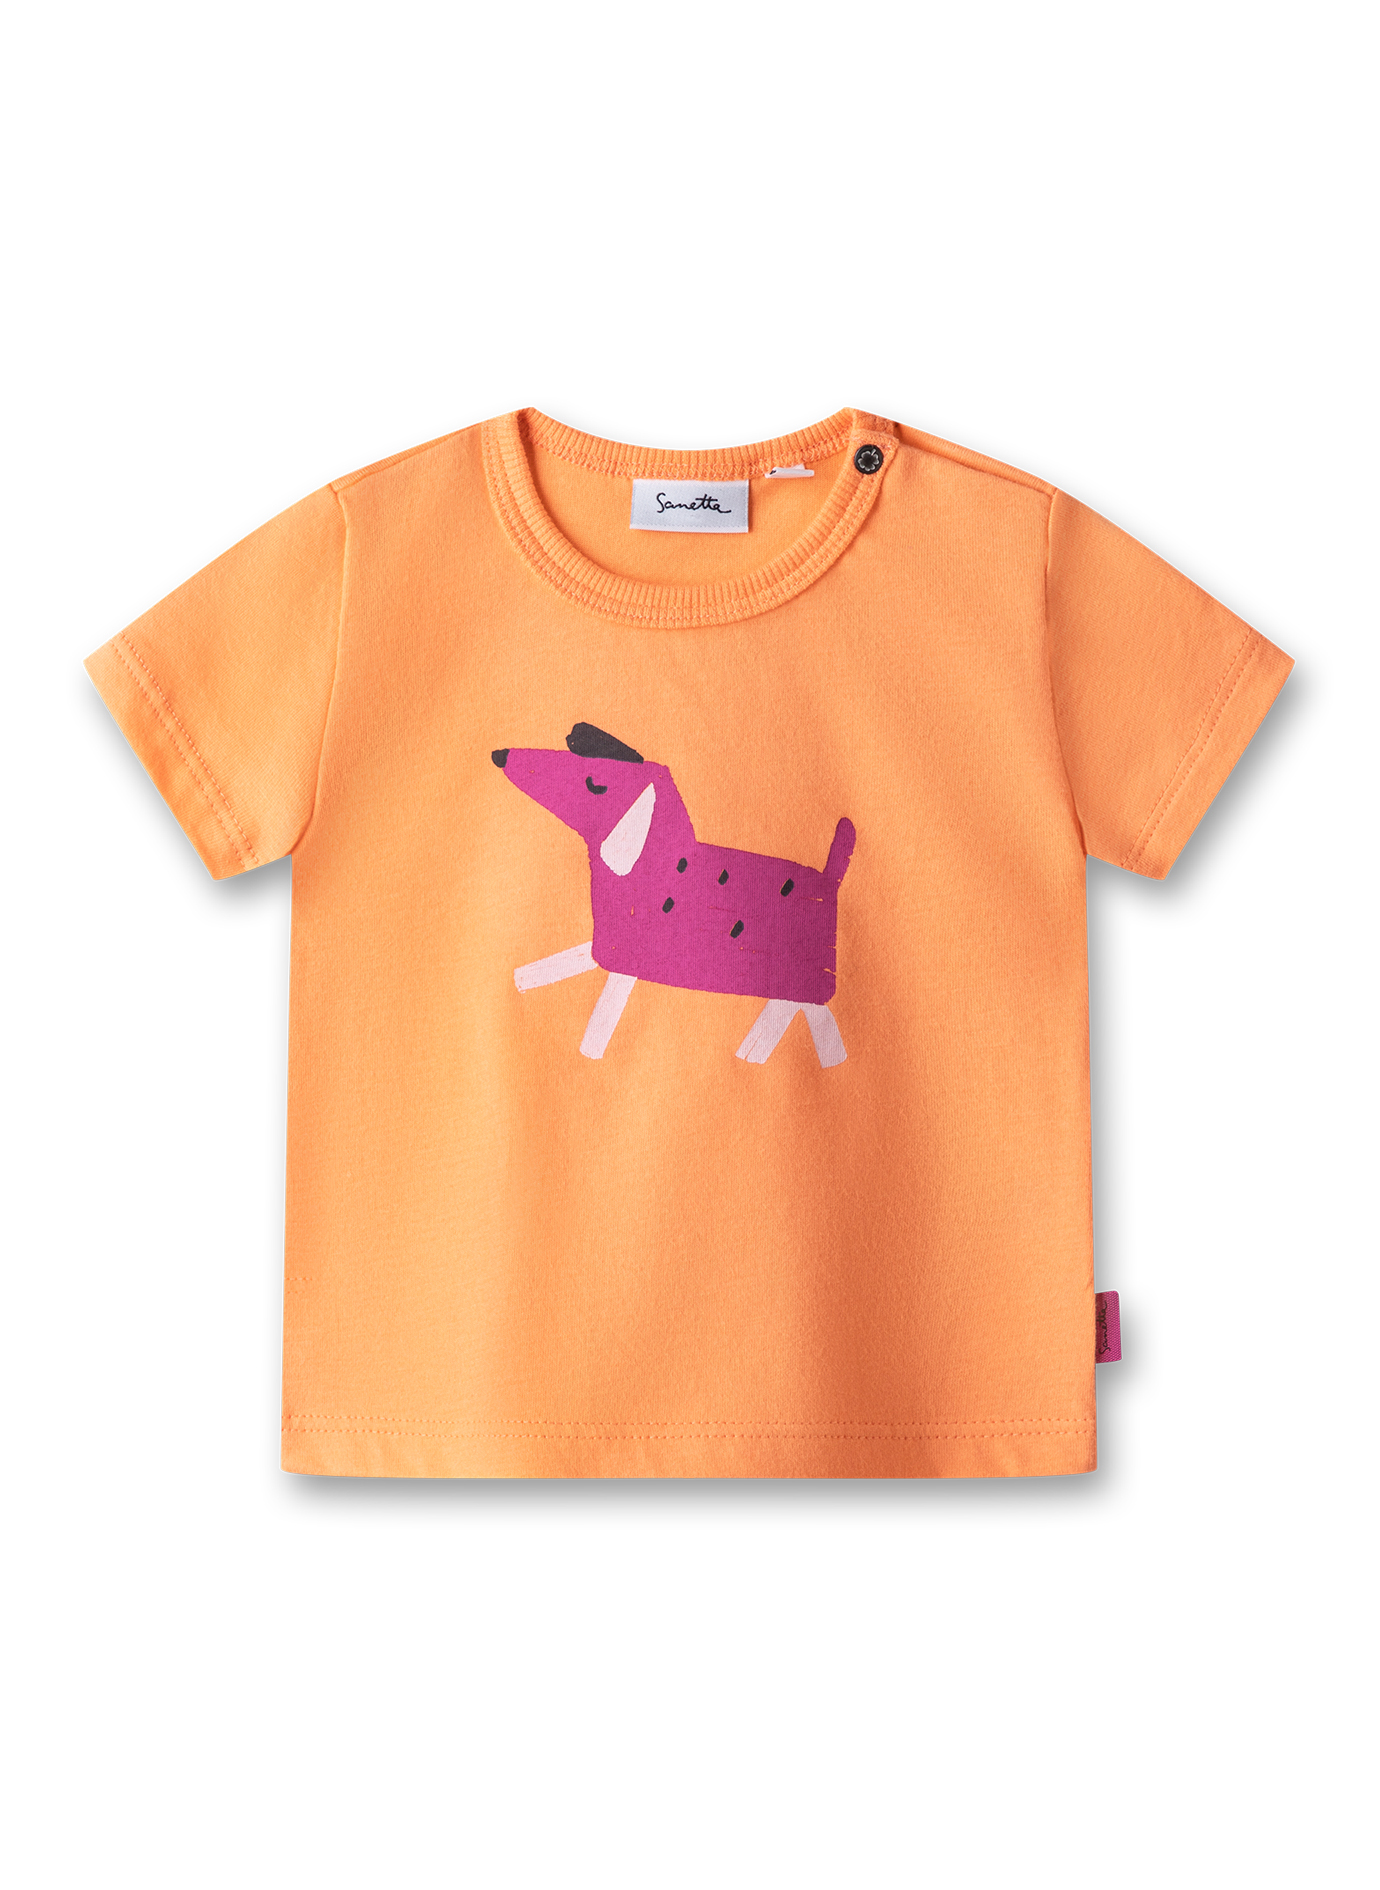 Mädchen T-Shirt Orange